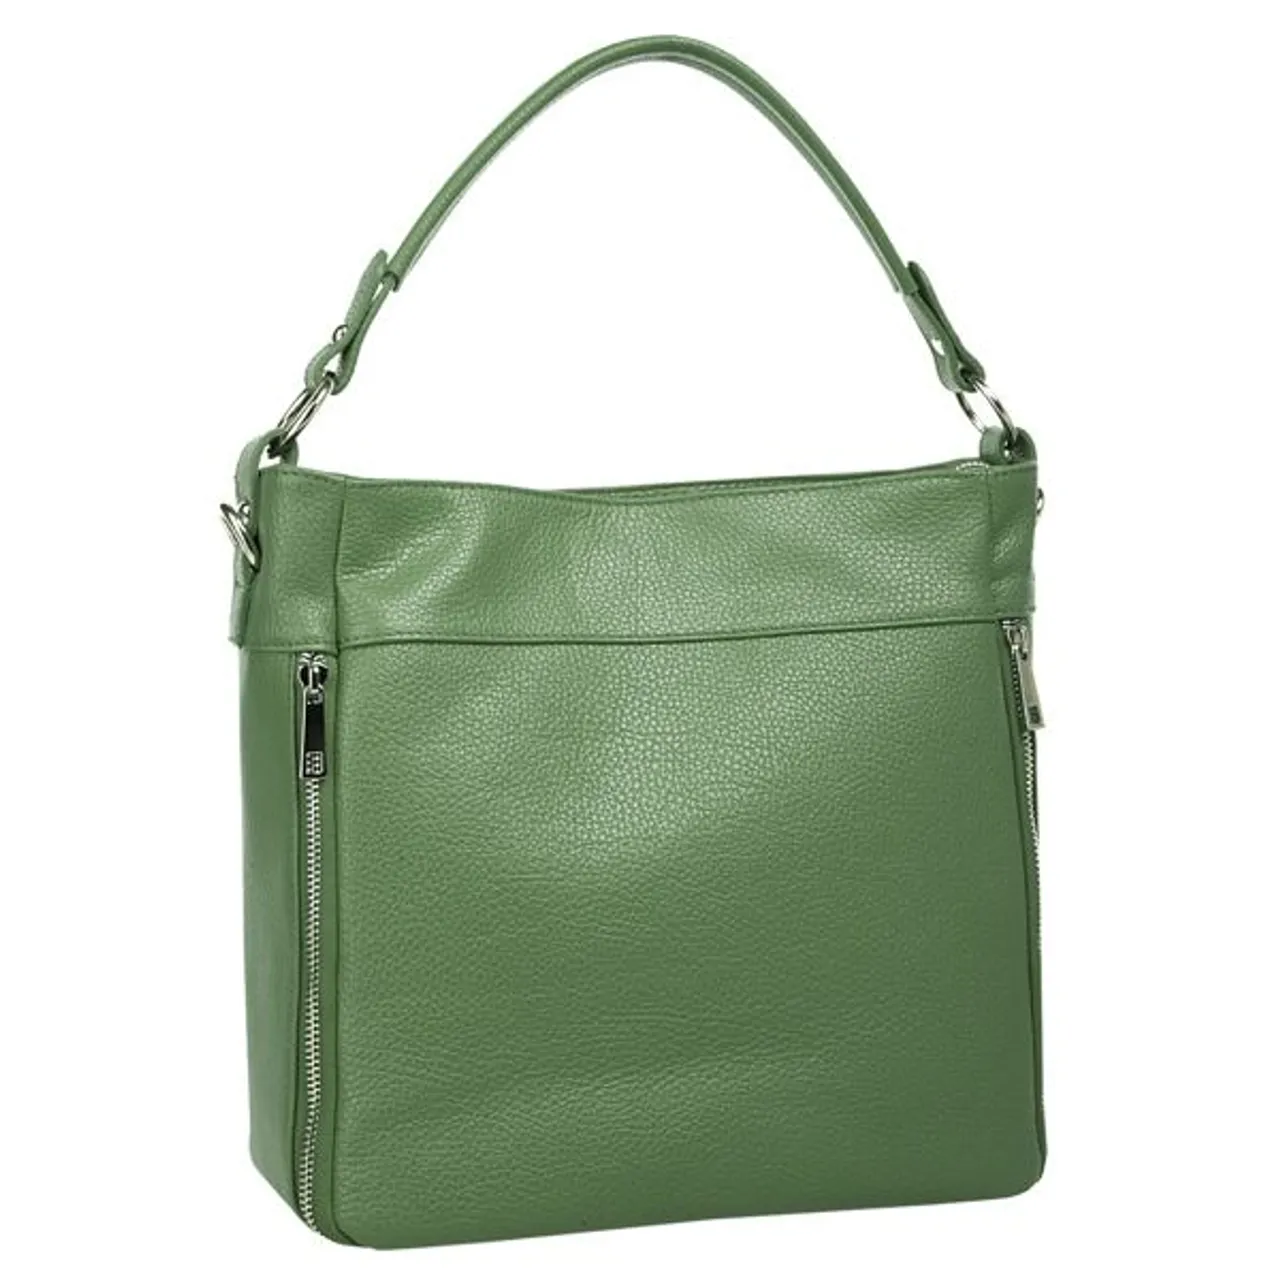 Henkeltasche CLUTY Gr. B/H/T: 35 cm x 27 cm x 9 cm onesize, grün Damen Taschen Handtaschen echt Leder, Made in Italy